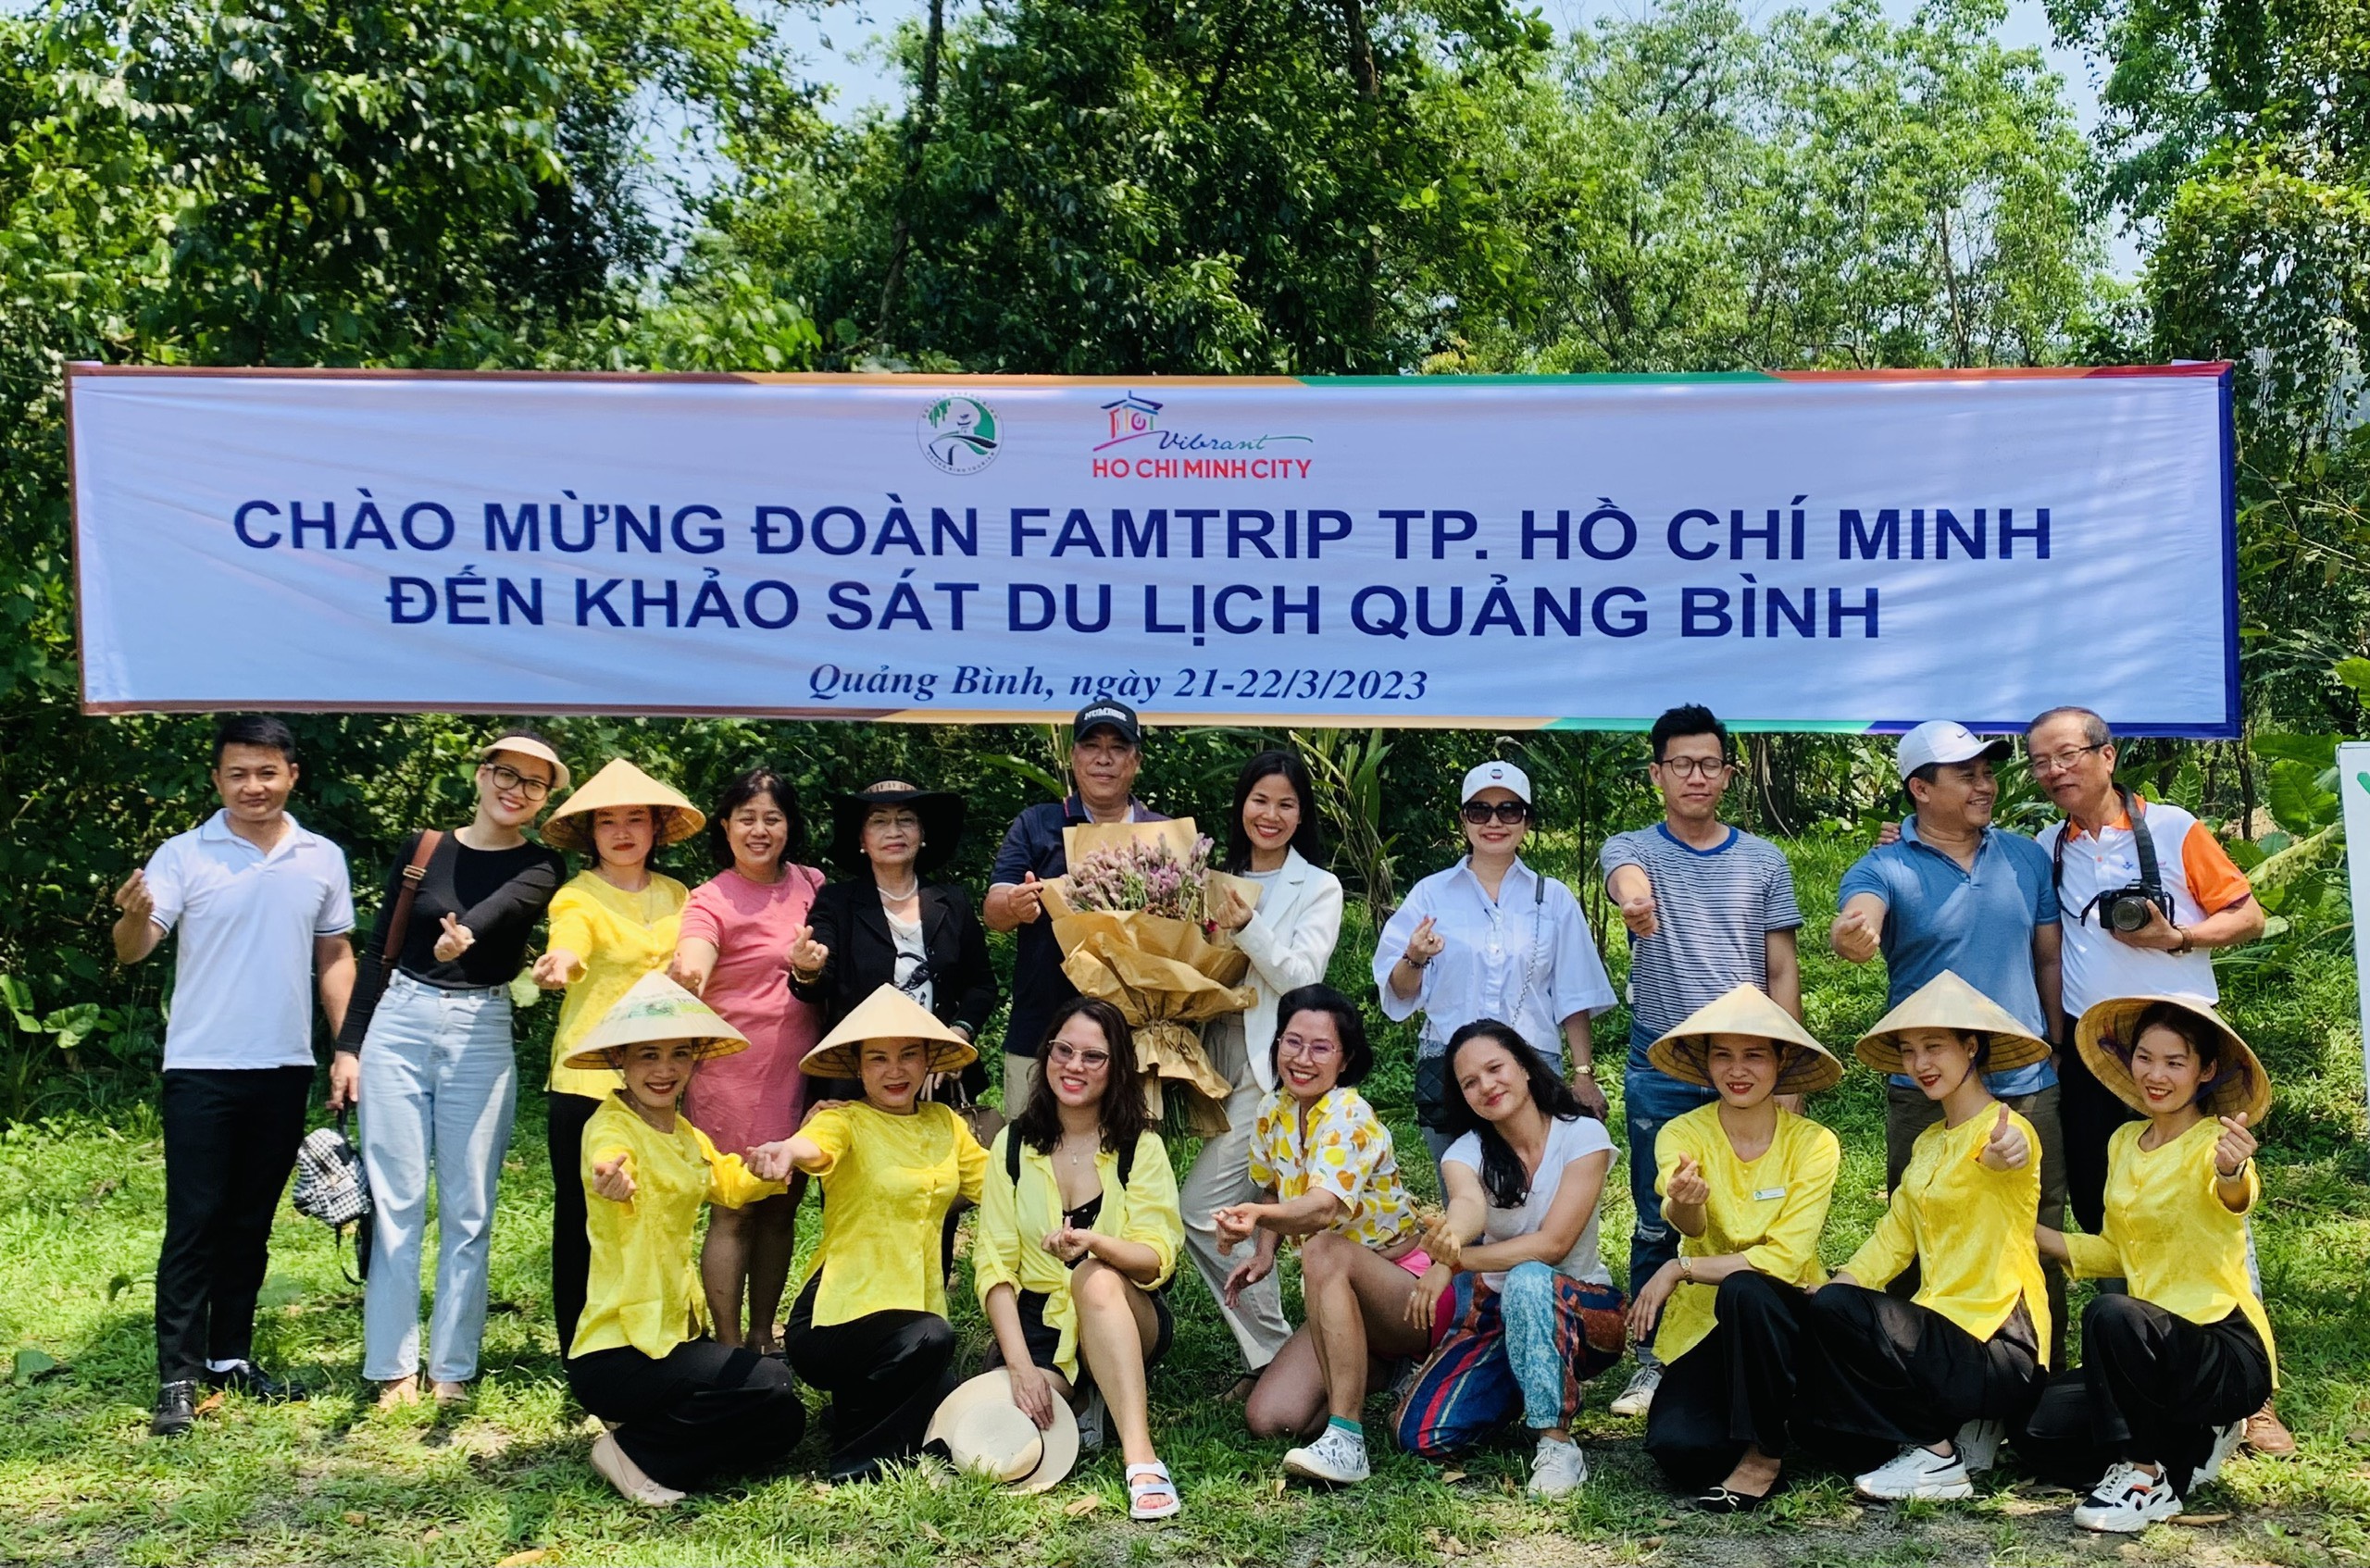 Đoàn Famtrip TP. Hồ Chí Minh khảo sát điểm đến du lịch Quảng Bình